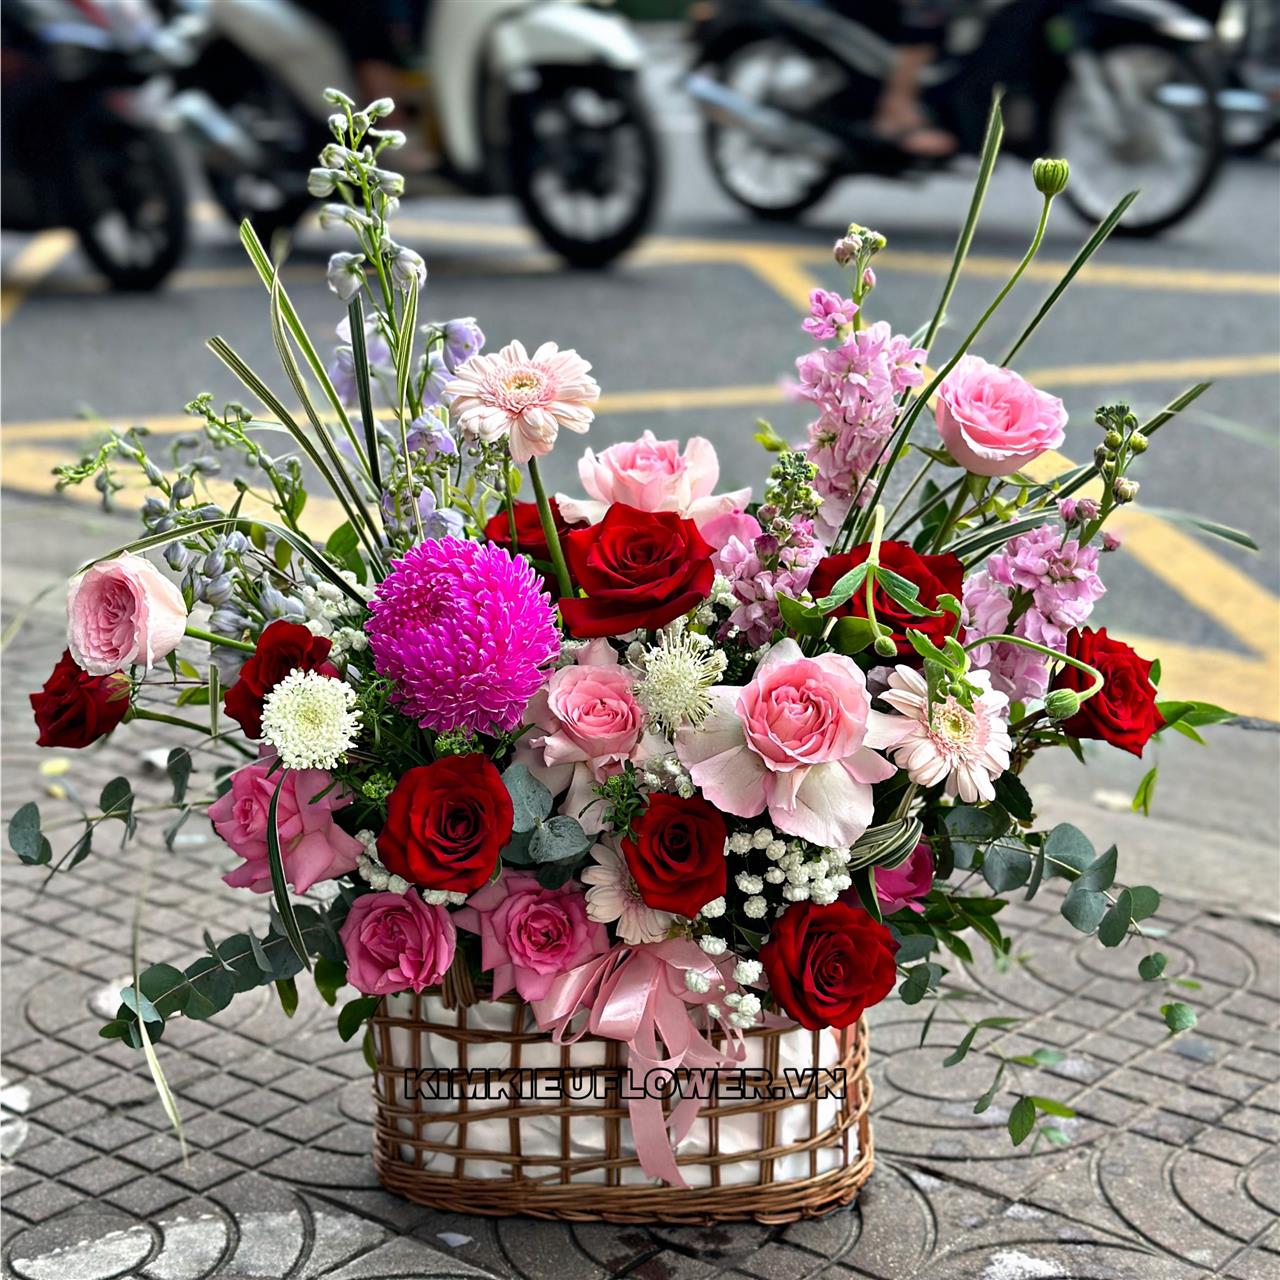 giỏ hoa với kiểu cắm tự nhiên, bay bổng theo phong cách hiện đại với sự kết hợp của nhiều loại hoa sang trọng